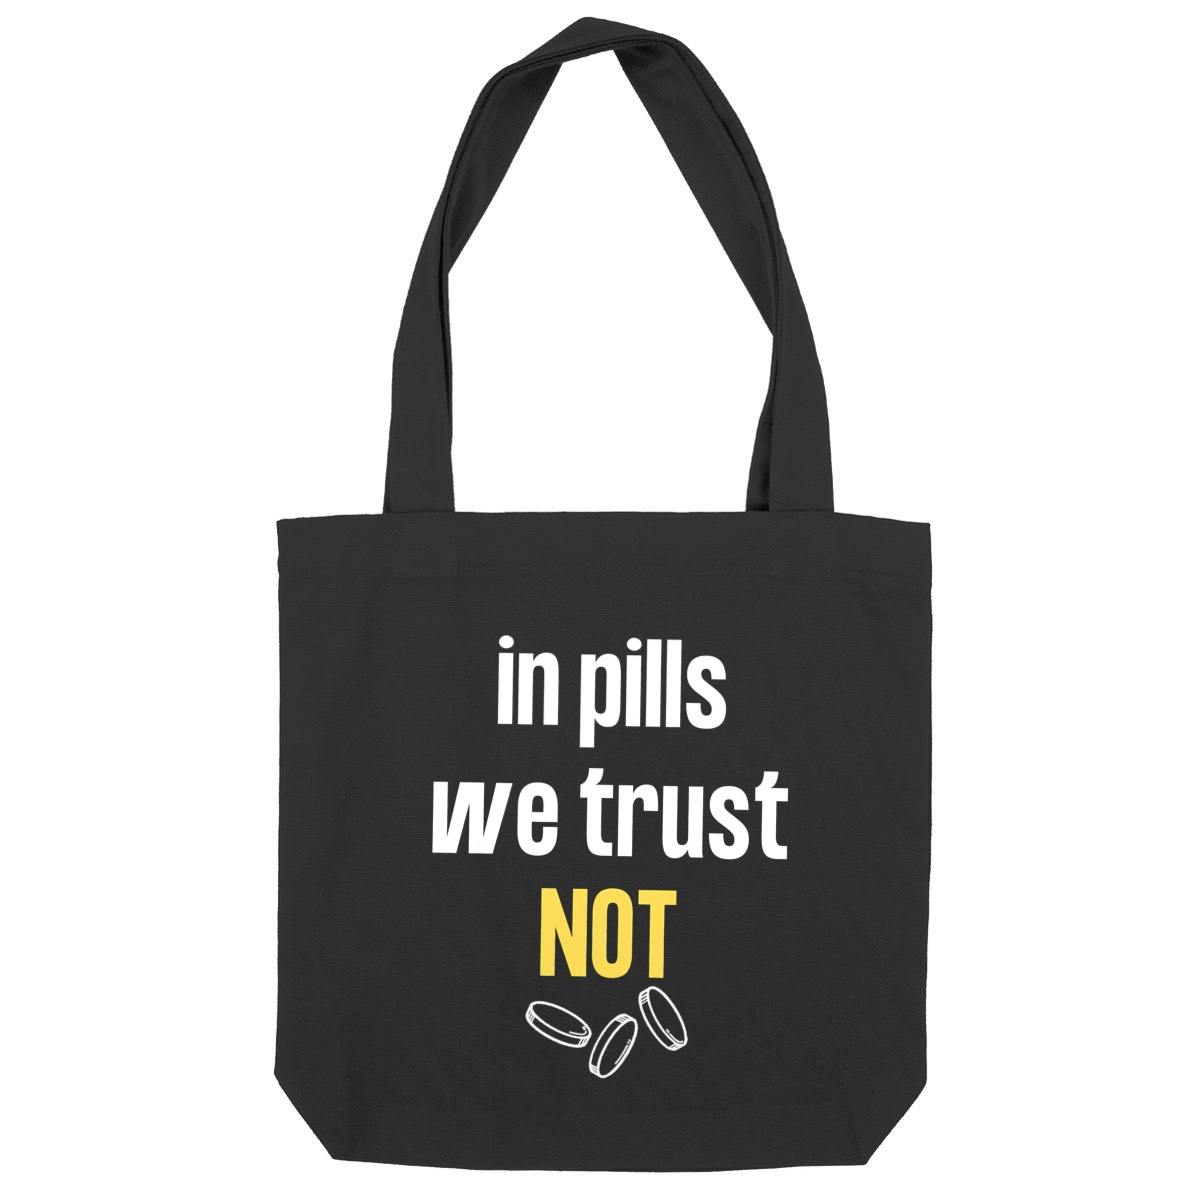 In pills we trust NOT